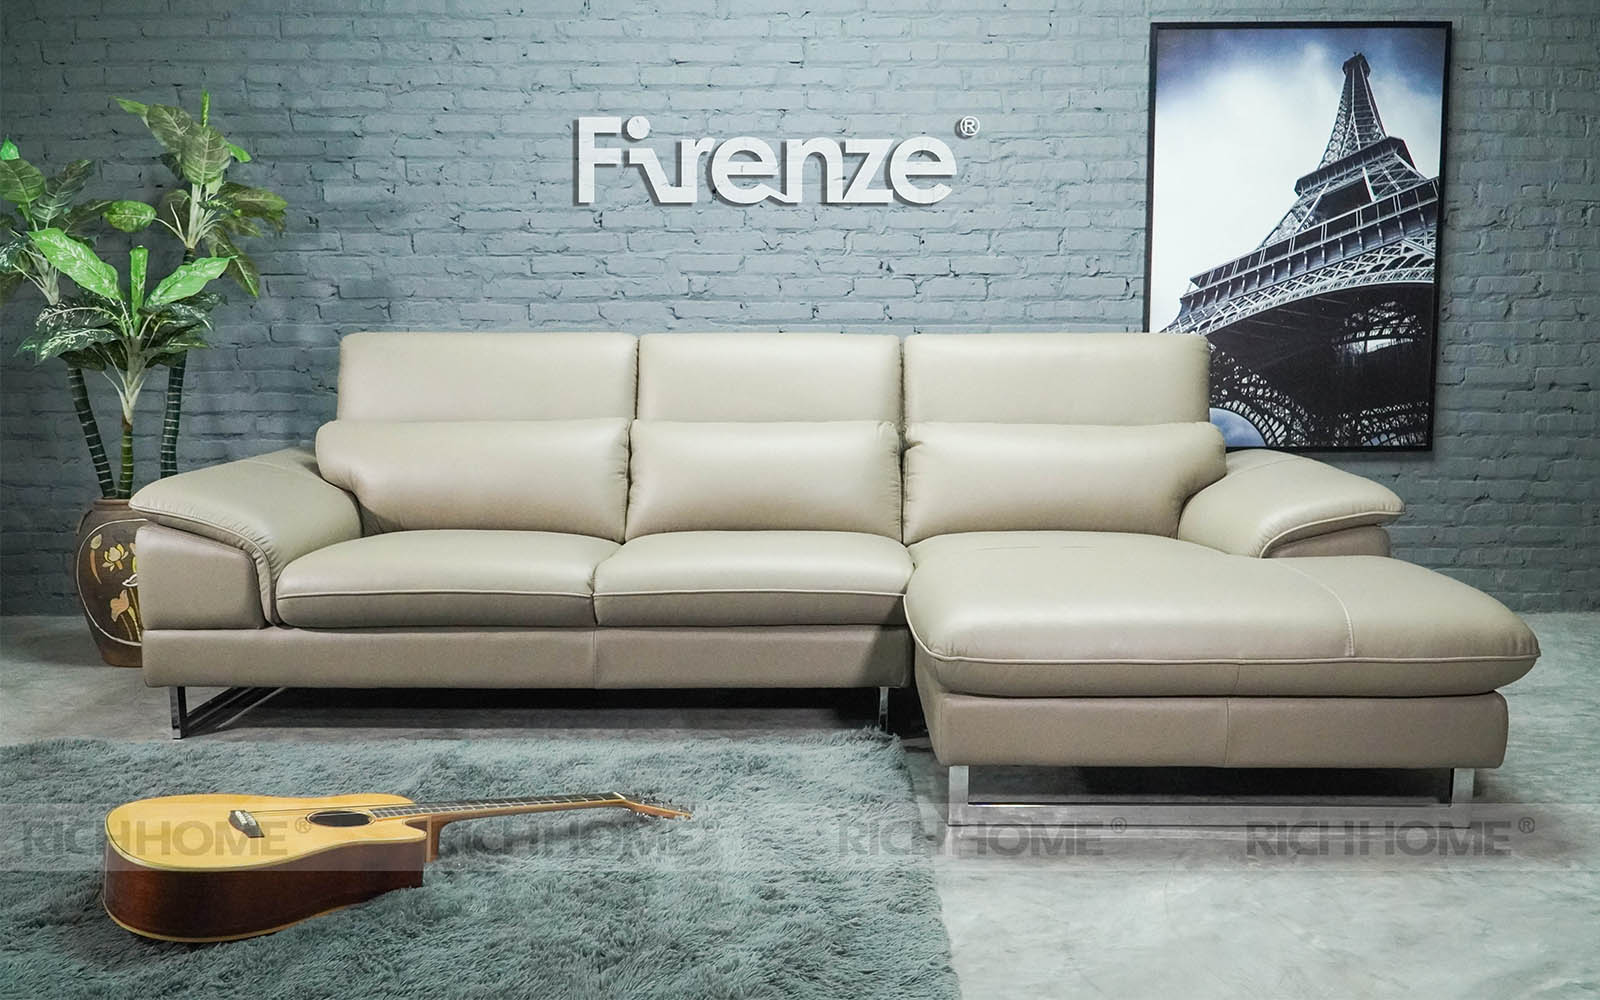 15 mẫu bàn ghế sofa phòng khách nhập khẩu đáng mua nhất - Ảnh 2